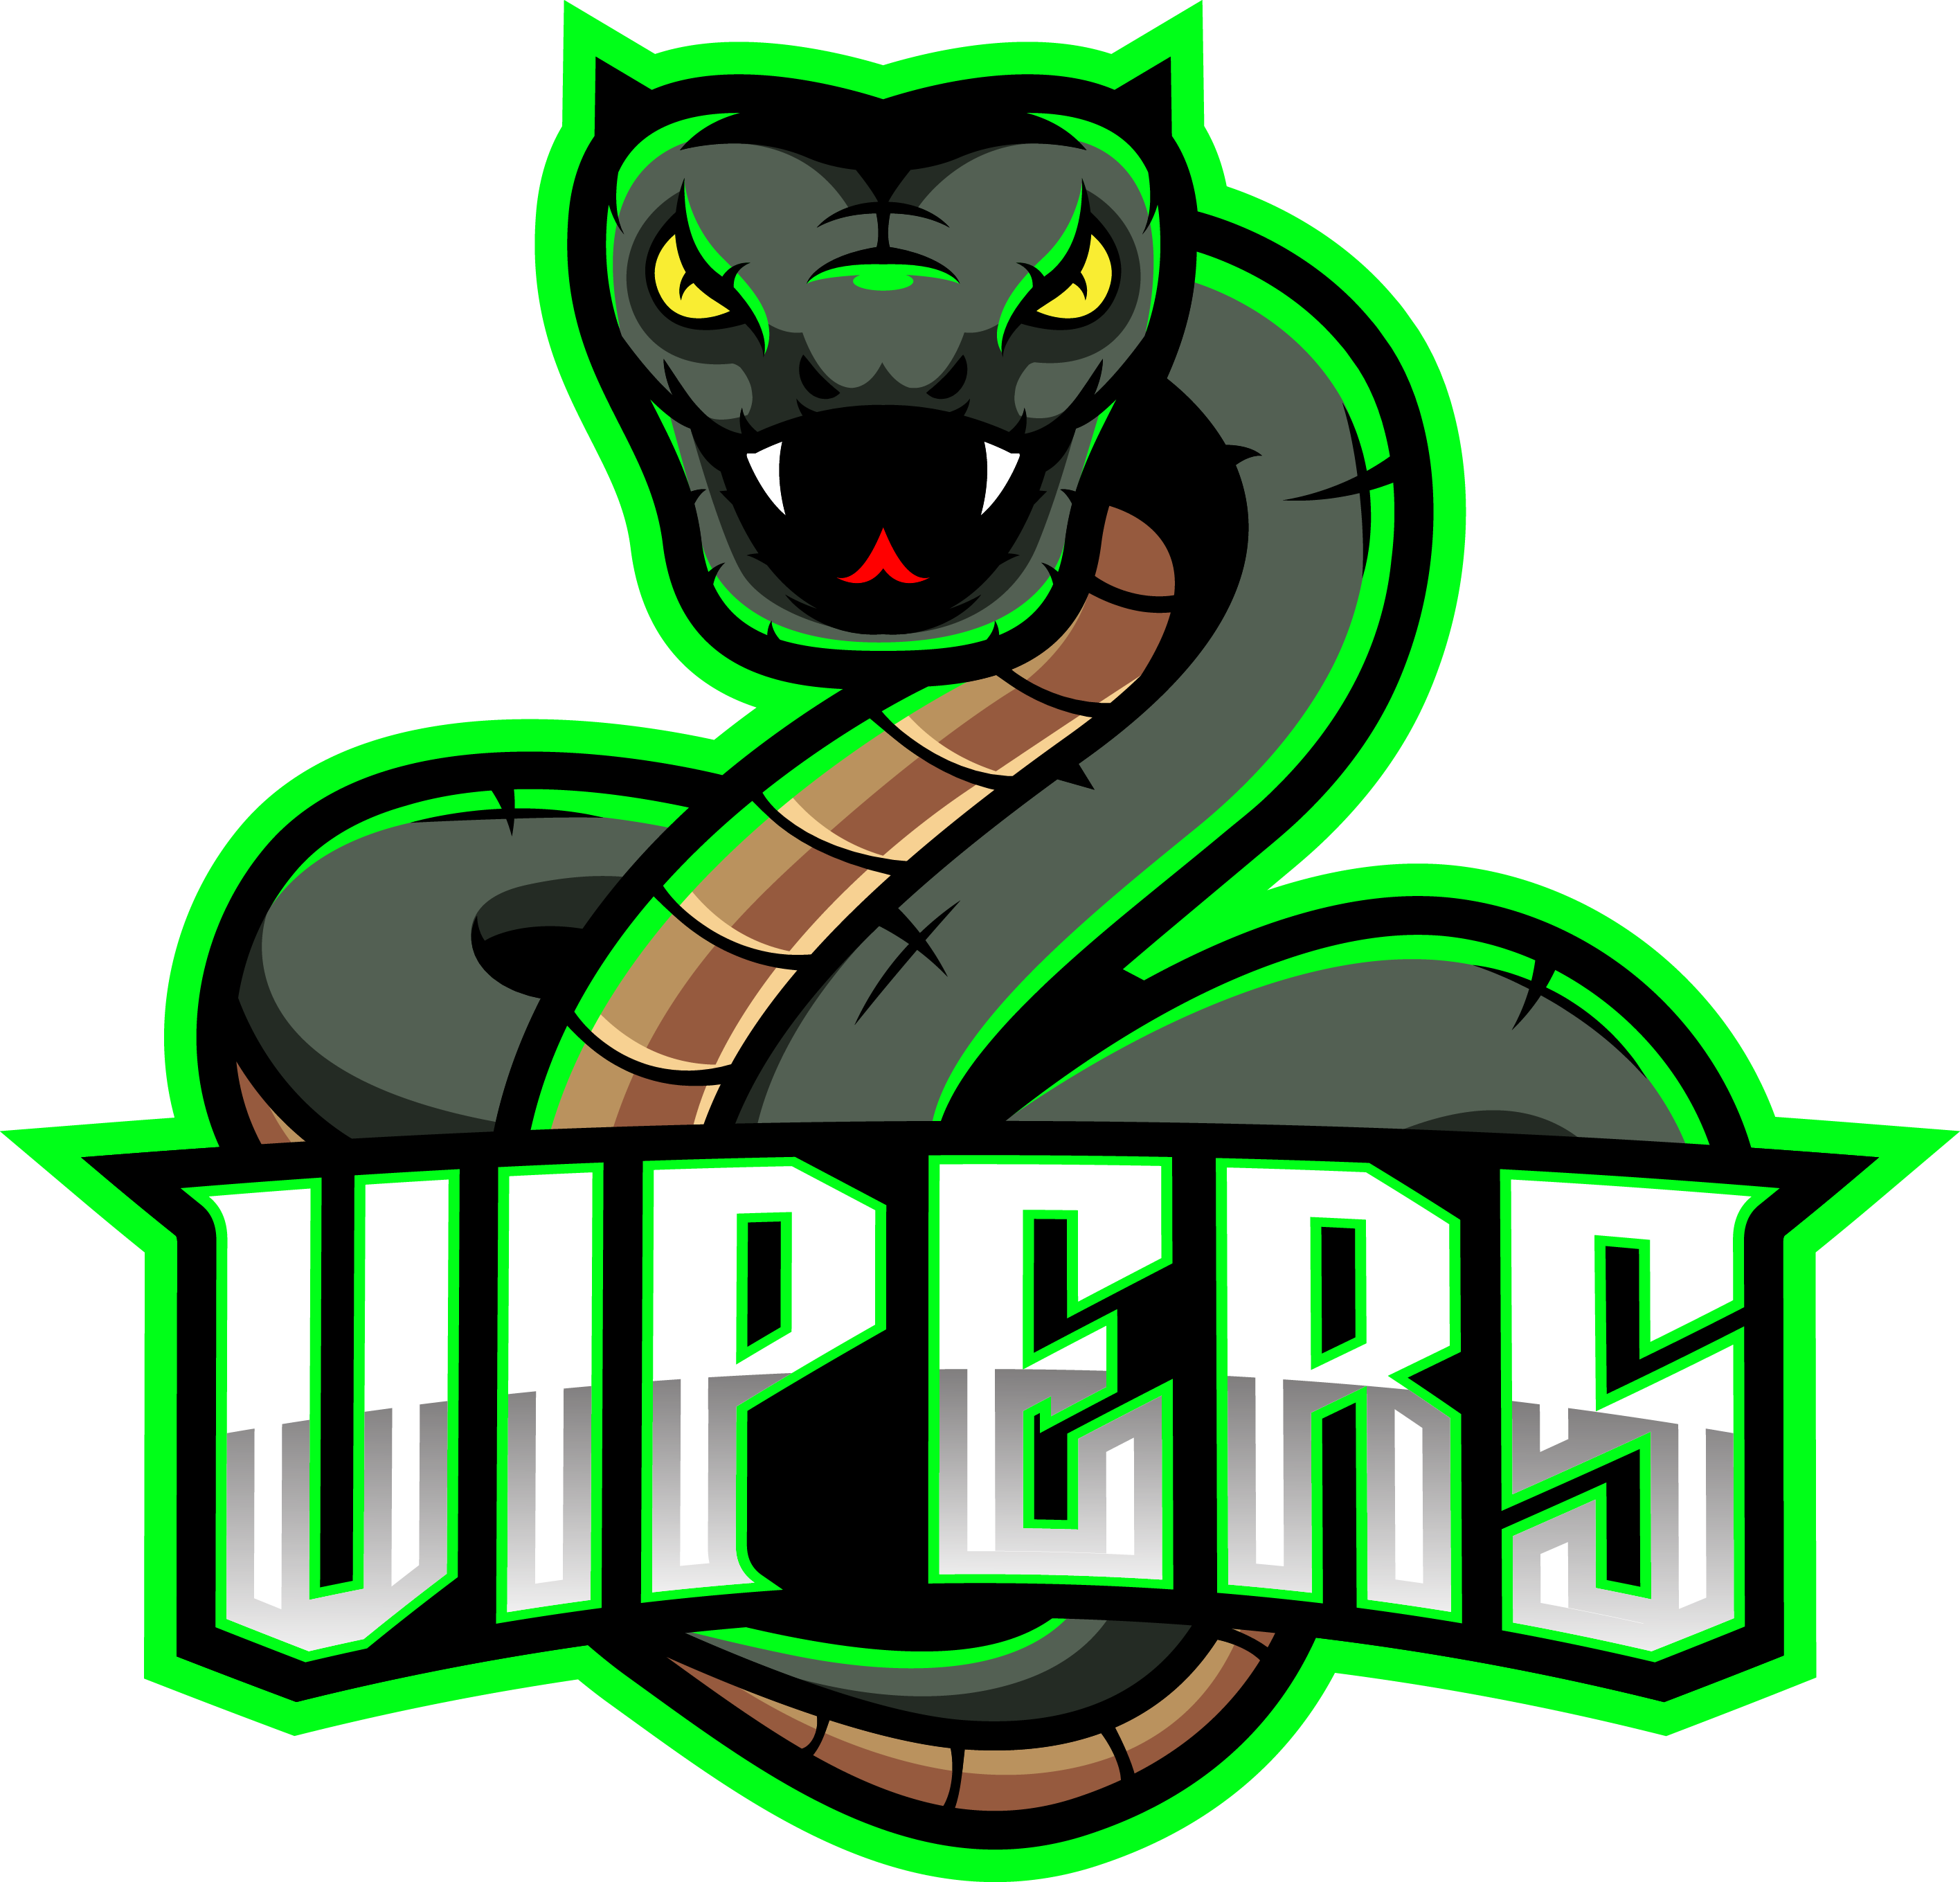 viper snake logo